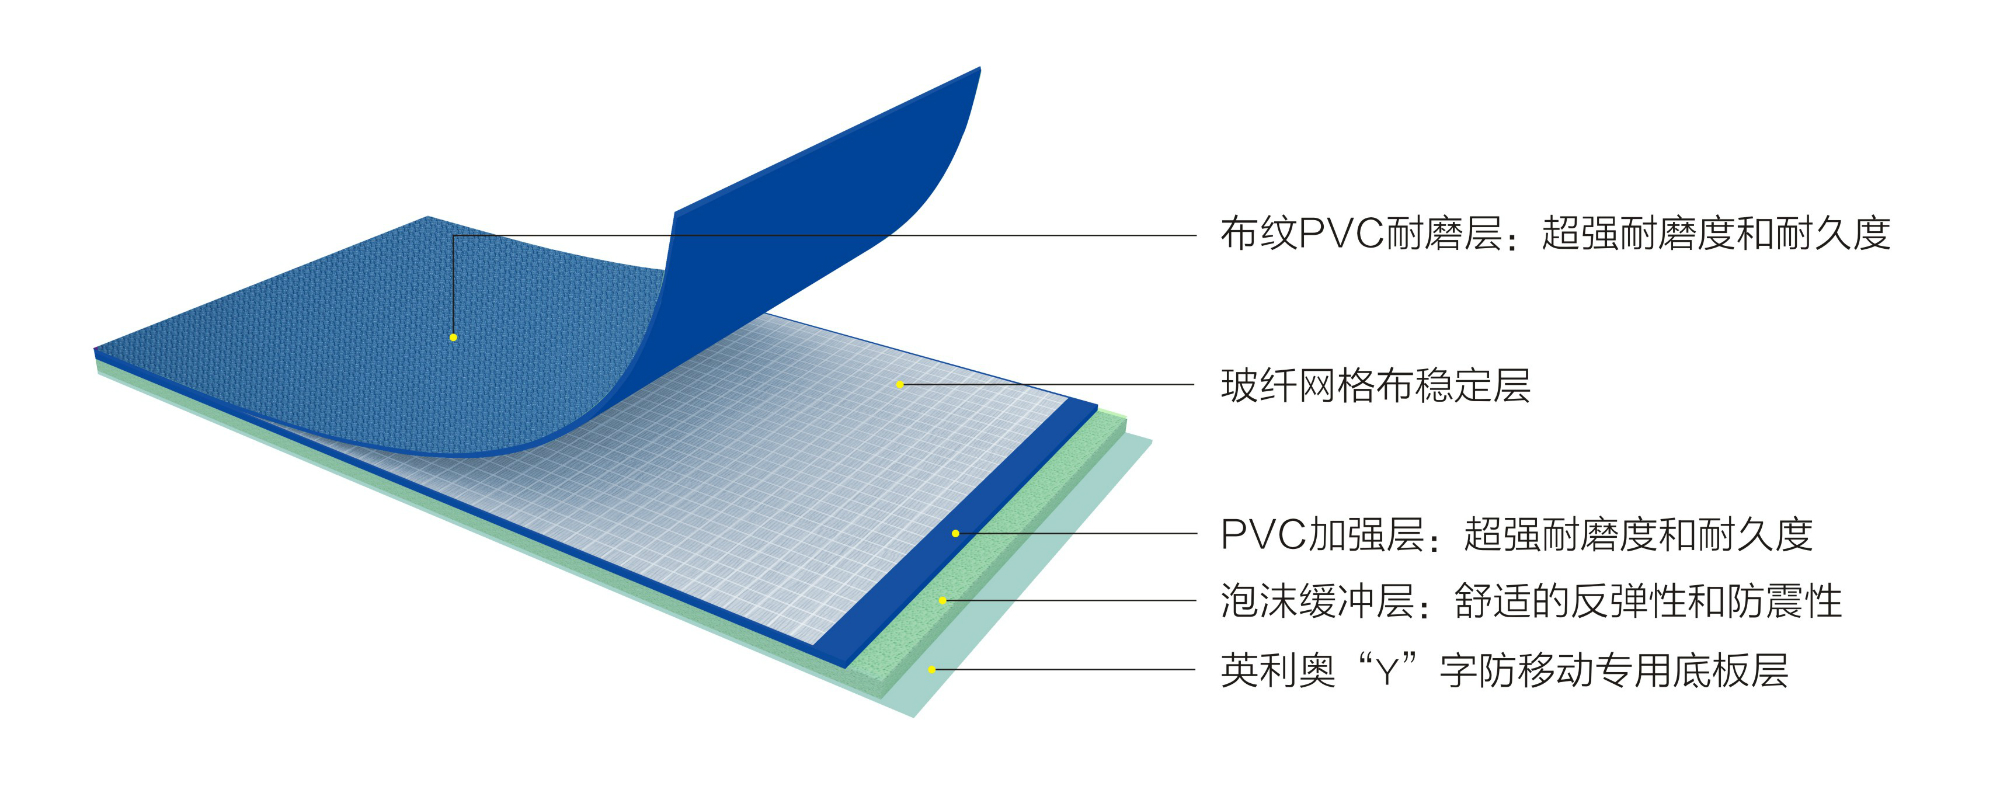 英利奥4.8mm蓝色布纹运动地板—结构图